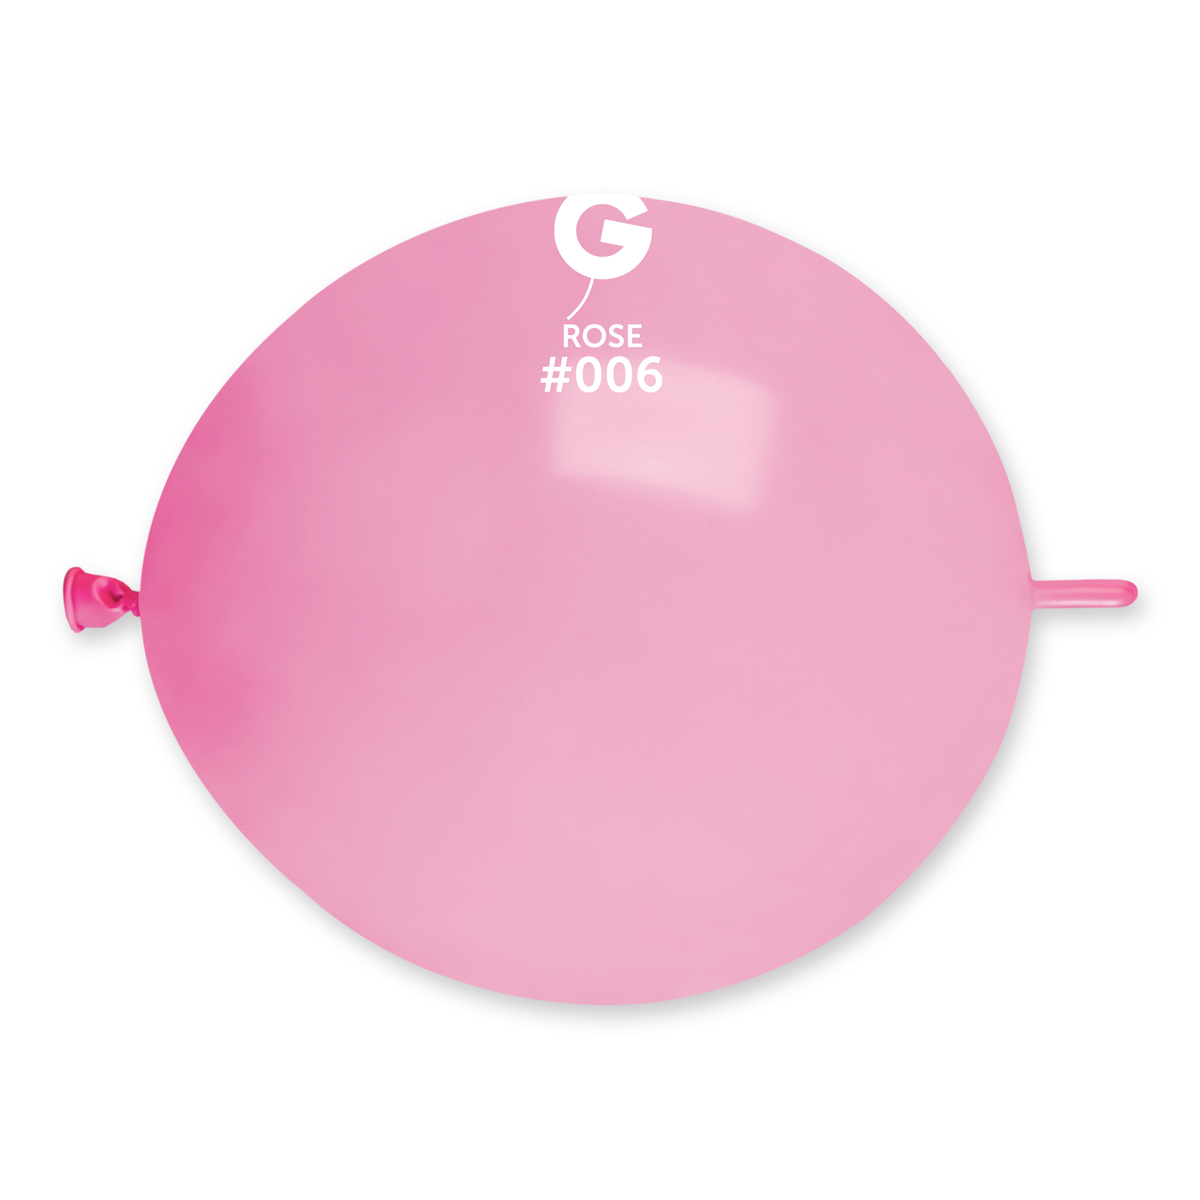 Gemar Spojovací balónek růžový 30 cm